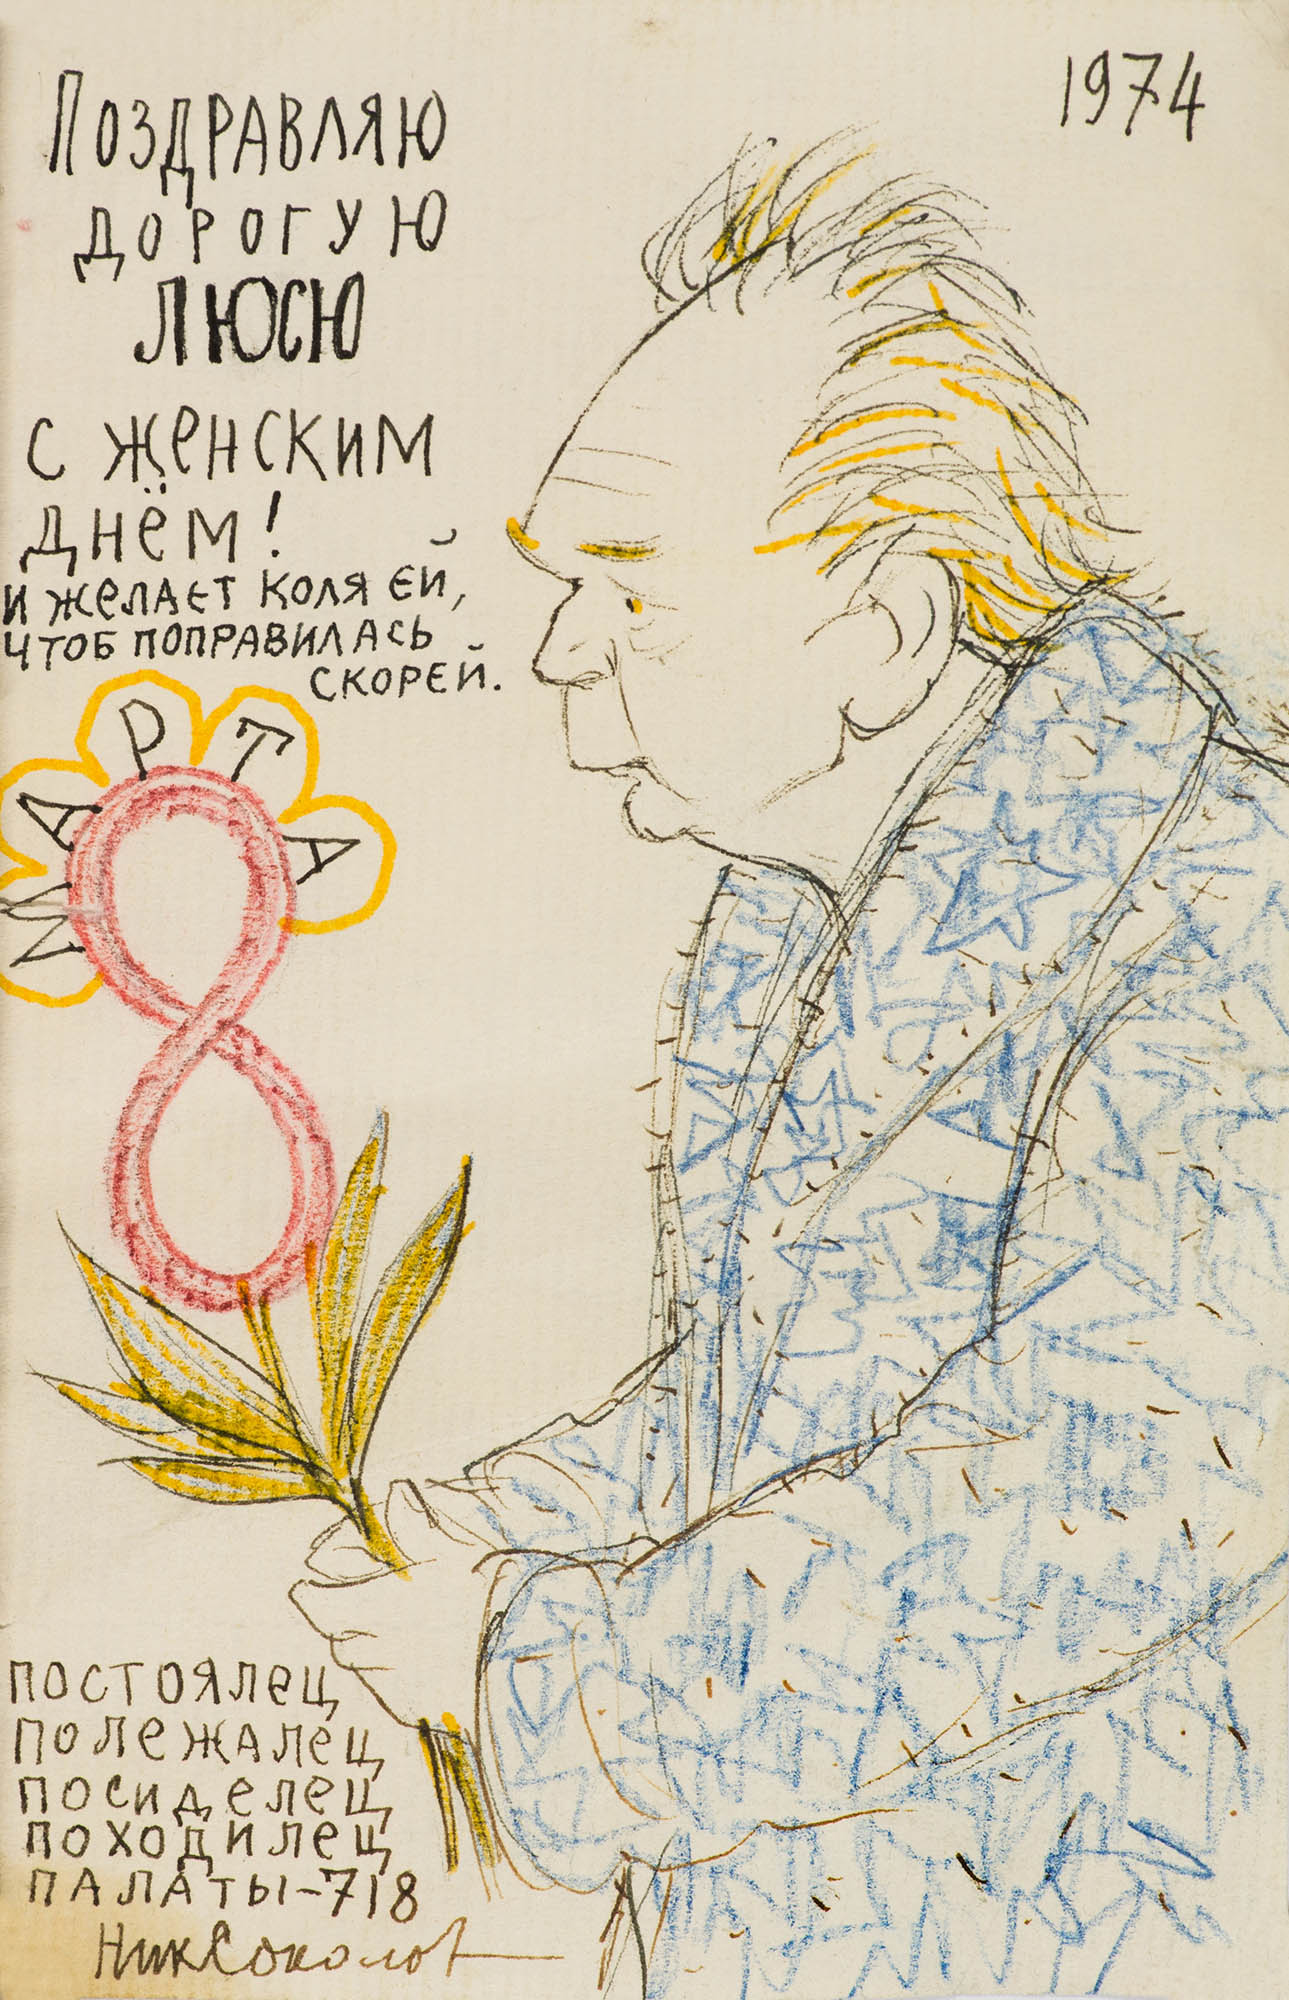 Три подписных рисунка-шаржа, посвященных Лии Орловой-Лозинской.